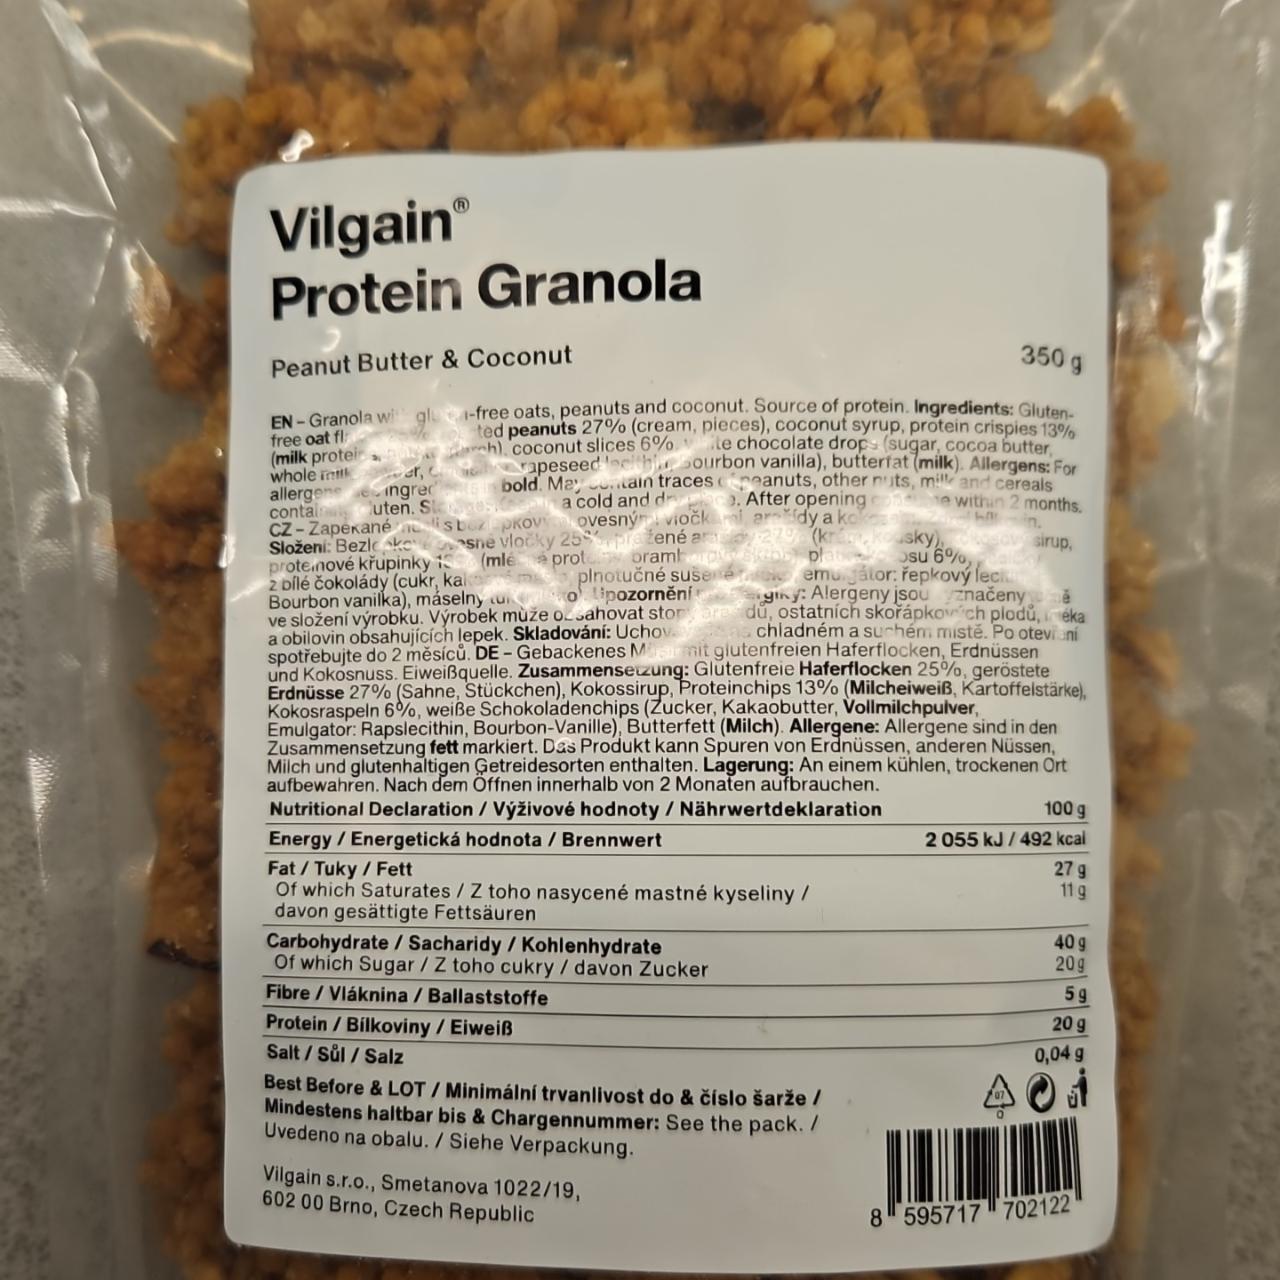 Fotografie - Protein Granola Peanut Butter & Coconut Vilgain